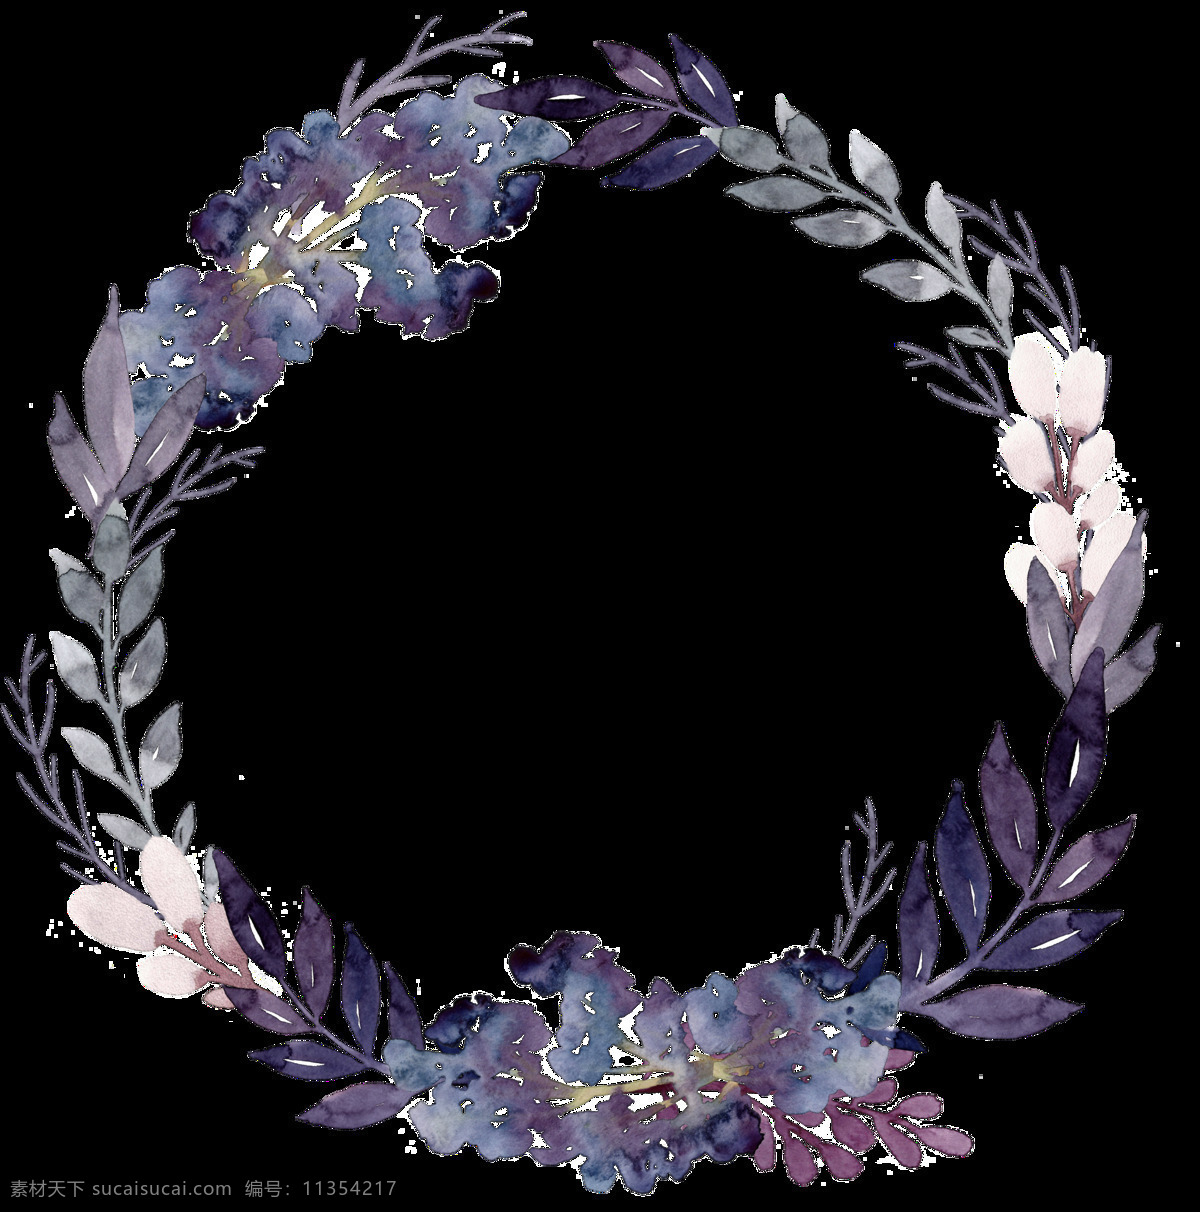 浪漫 深 紫色 树叶 手绘 花环 装饰 元素 花瓣 花环图案 圆形 紫色花朵 紫色树叶